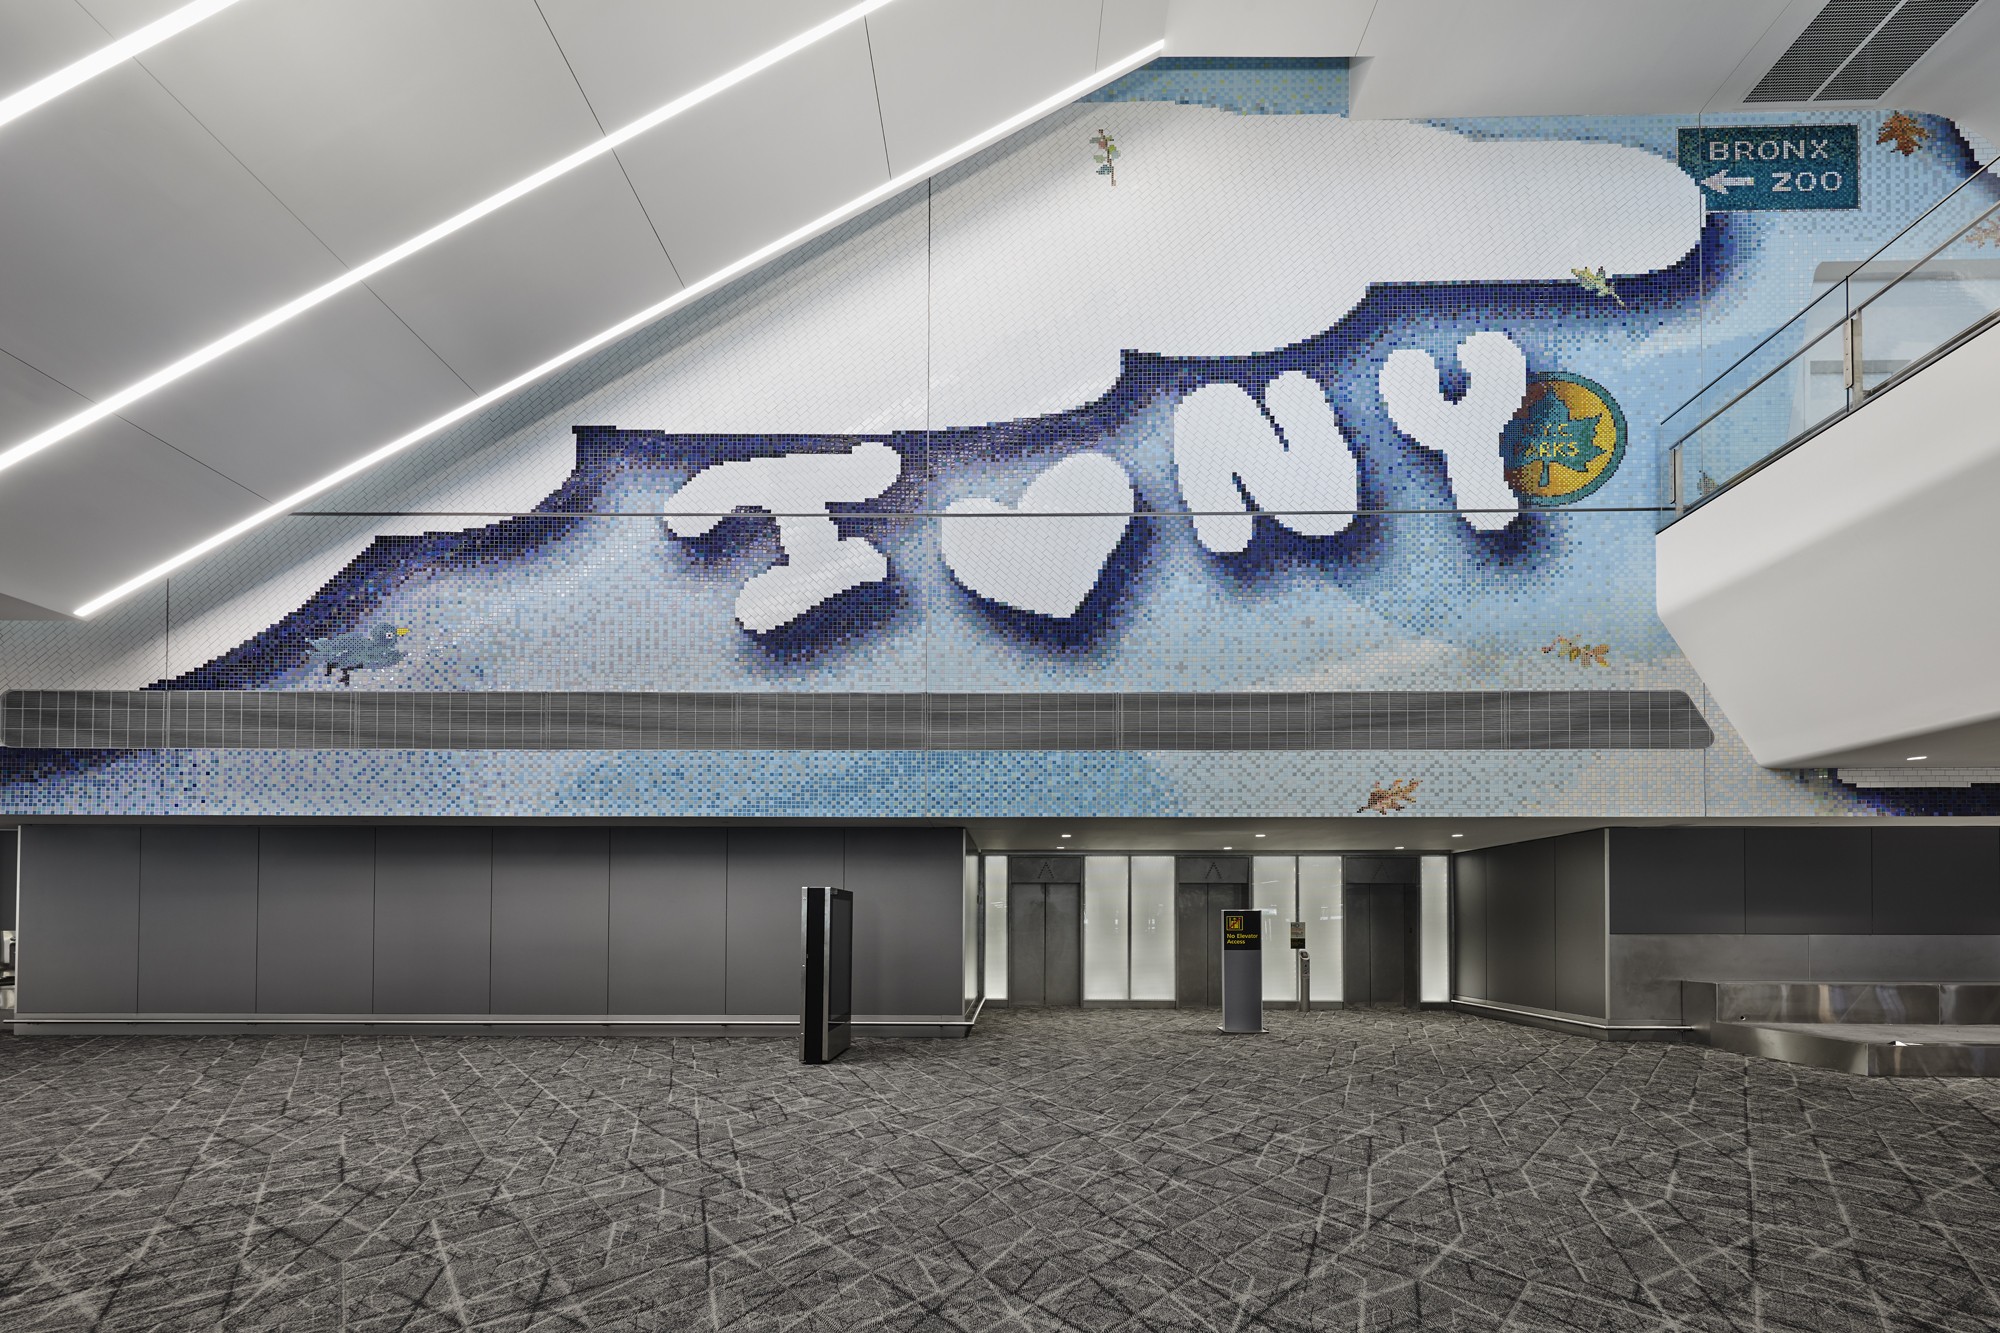 Aeroporto de Nova York tem terminal que é quase uma galeria de arte (Foto: Nicholas Knight e Tom Powell Imaging (Divulgação))